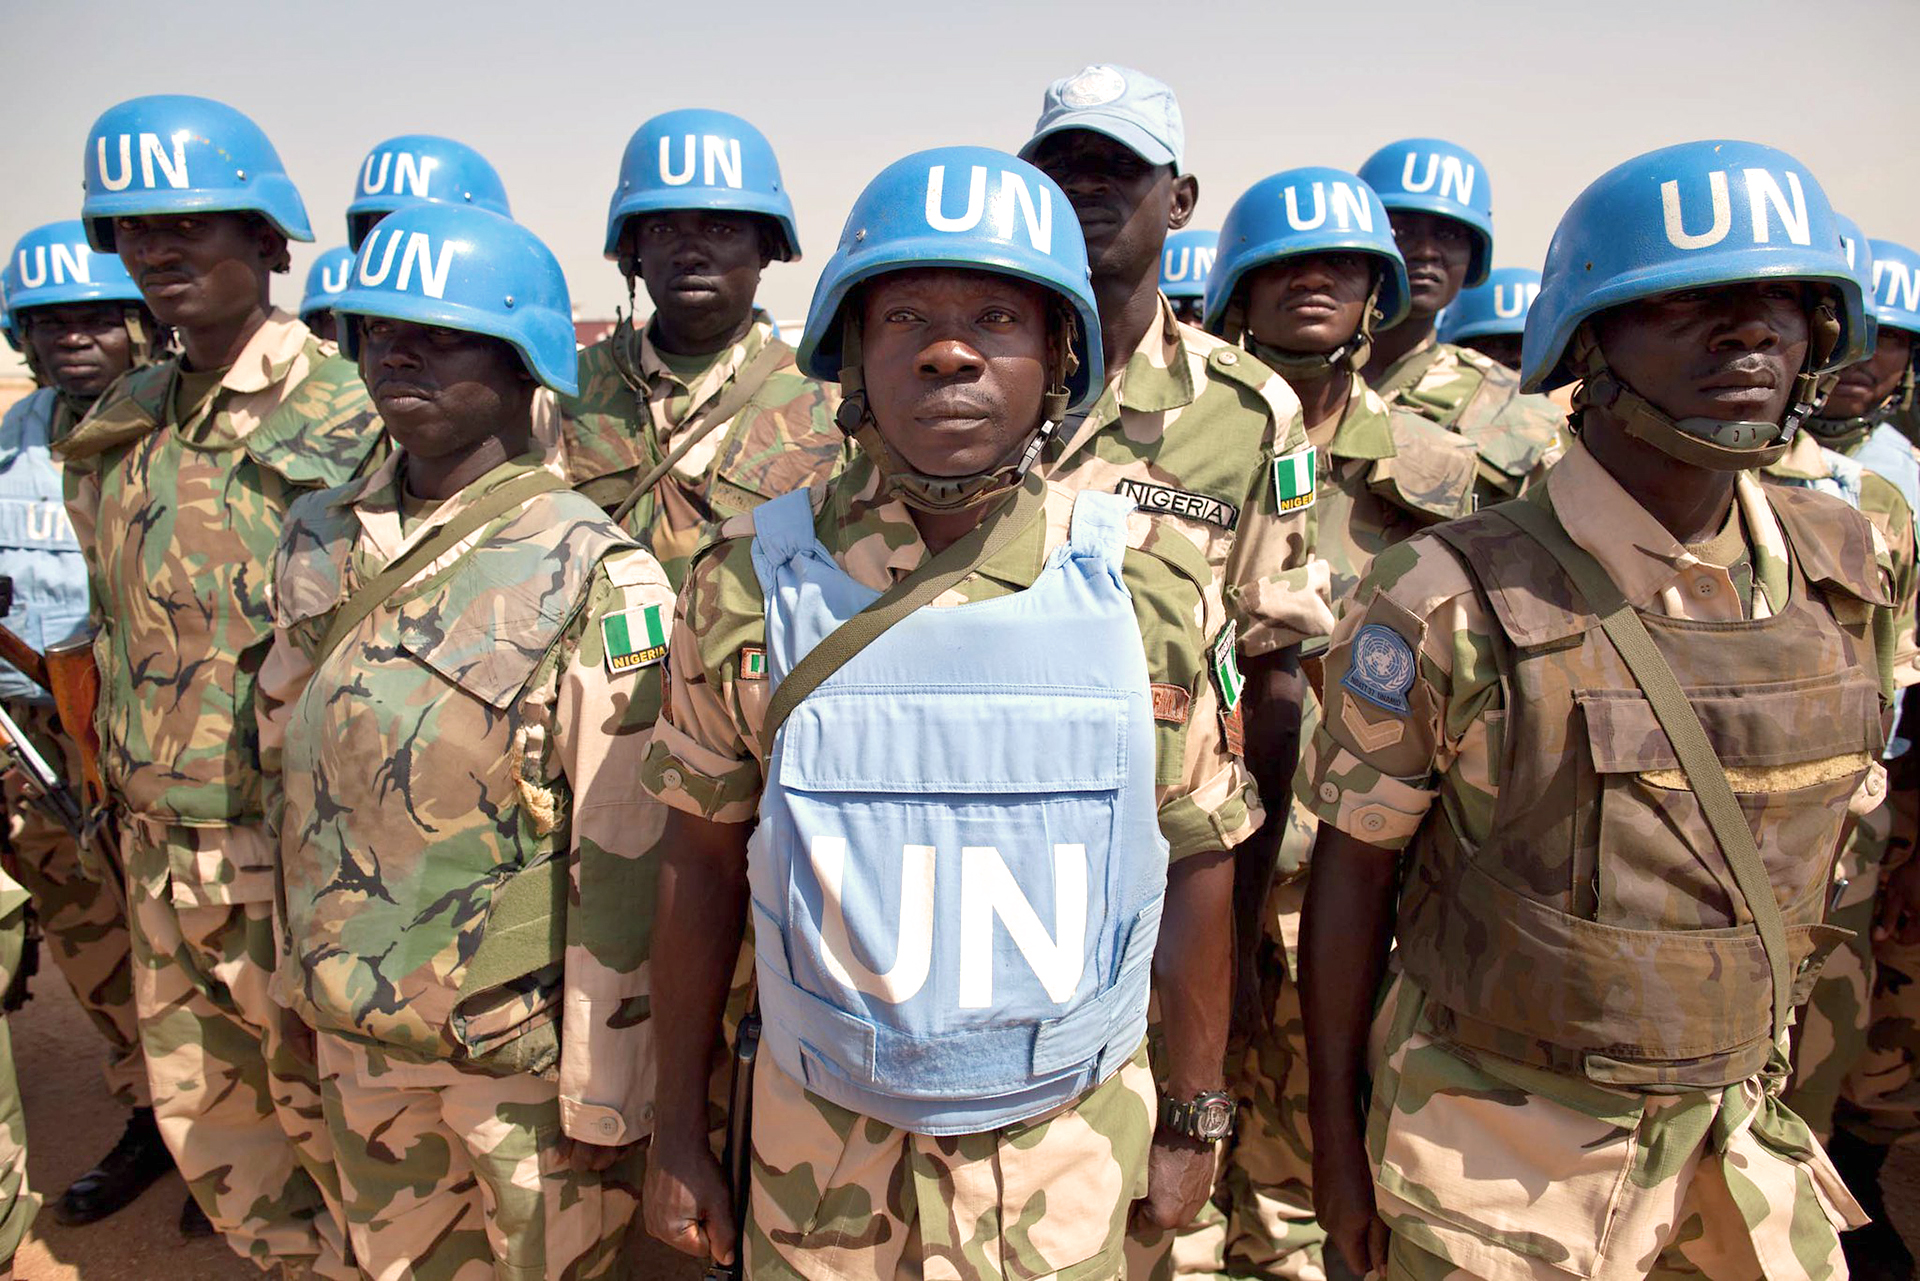 Sudan demands immediate withdrawal of UN peacekeepers